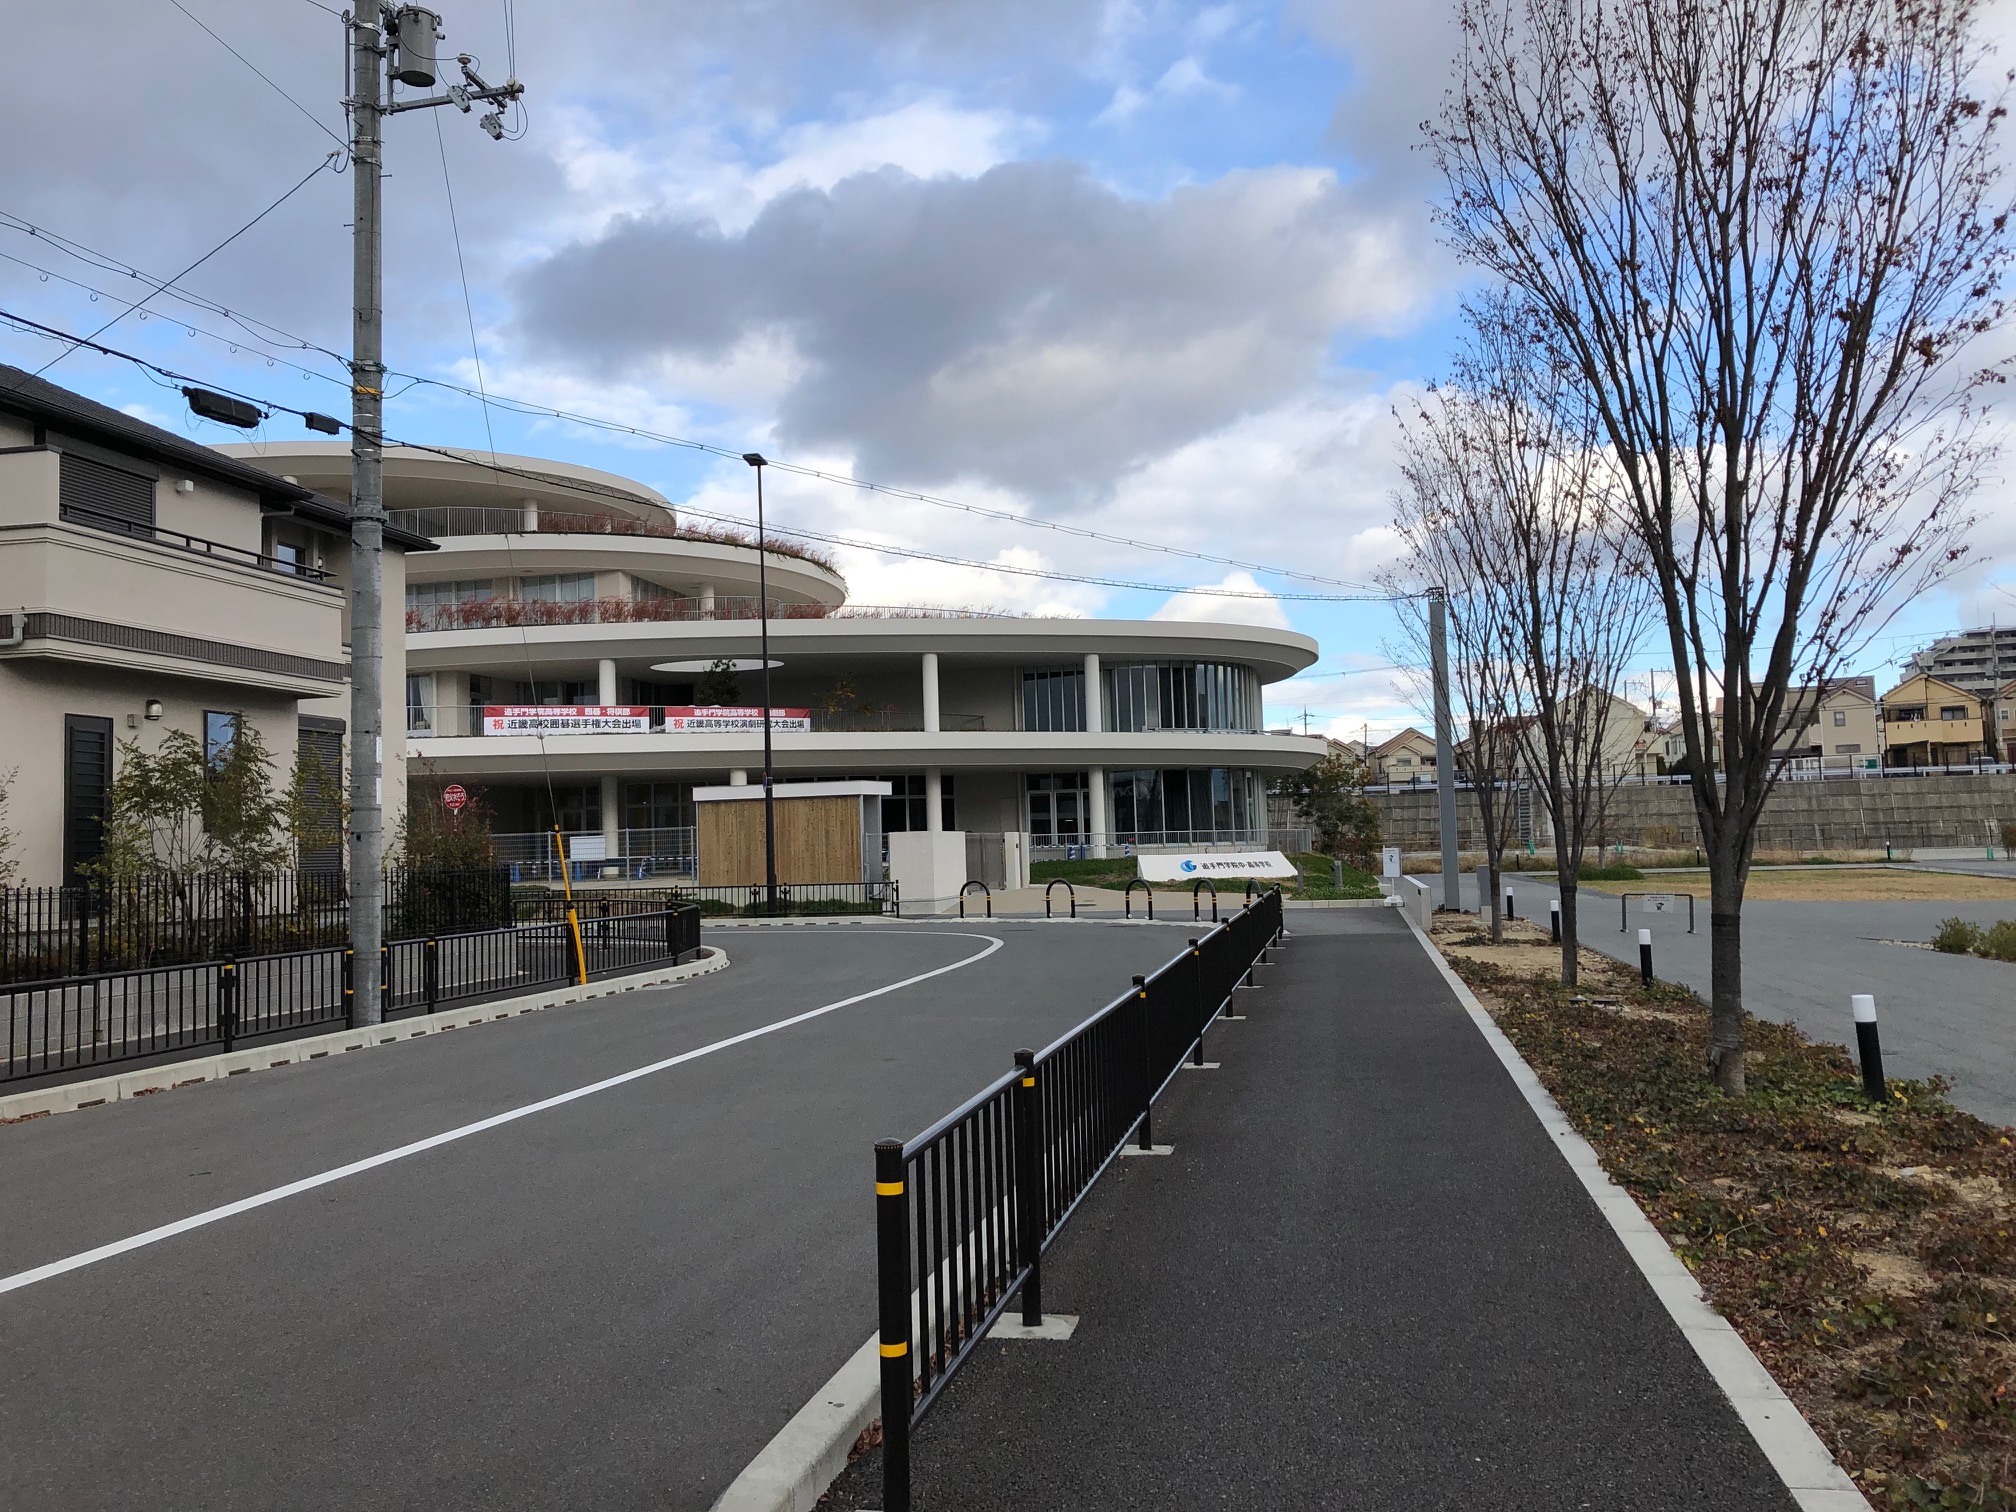 茨木スマートコミュニティ構想の文教ゾーンを担うのは、追手門学院大学の中学校・高校、大学。写真の奥に見える建物は中学校・高校の校舎。